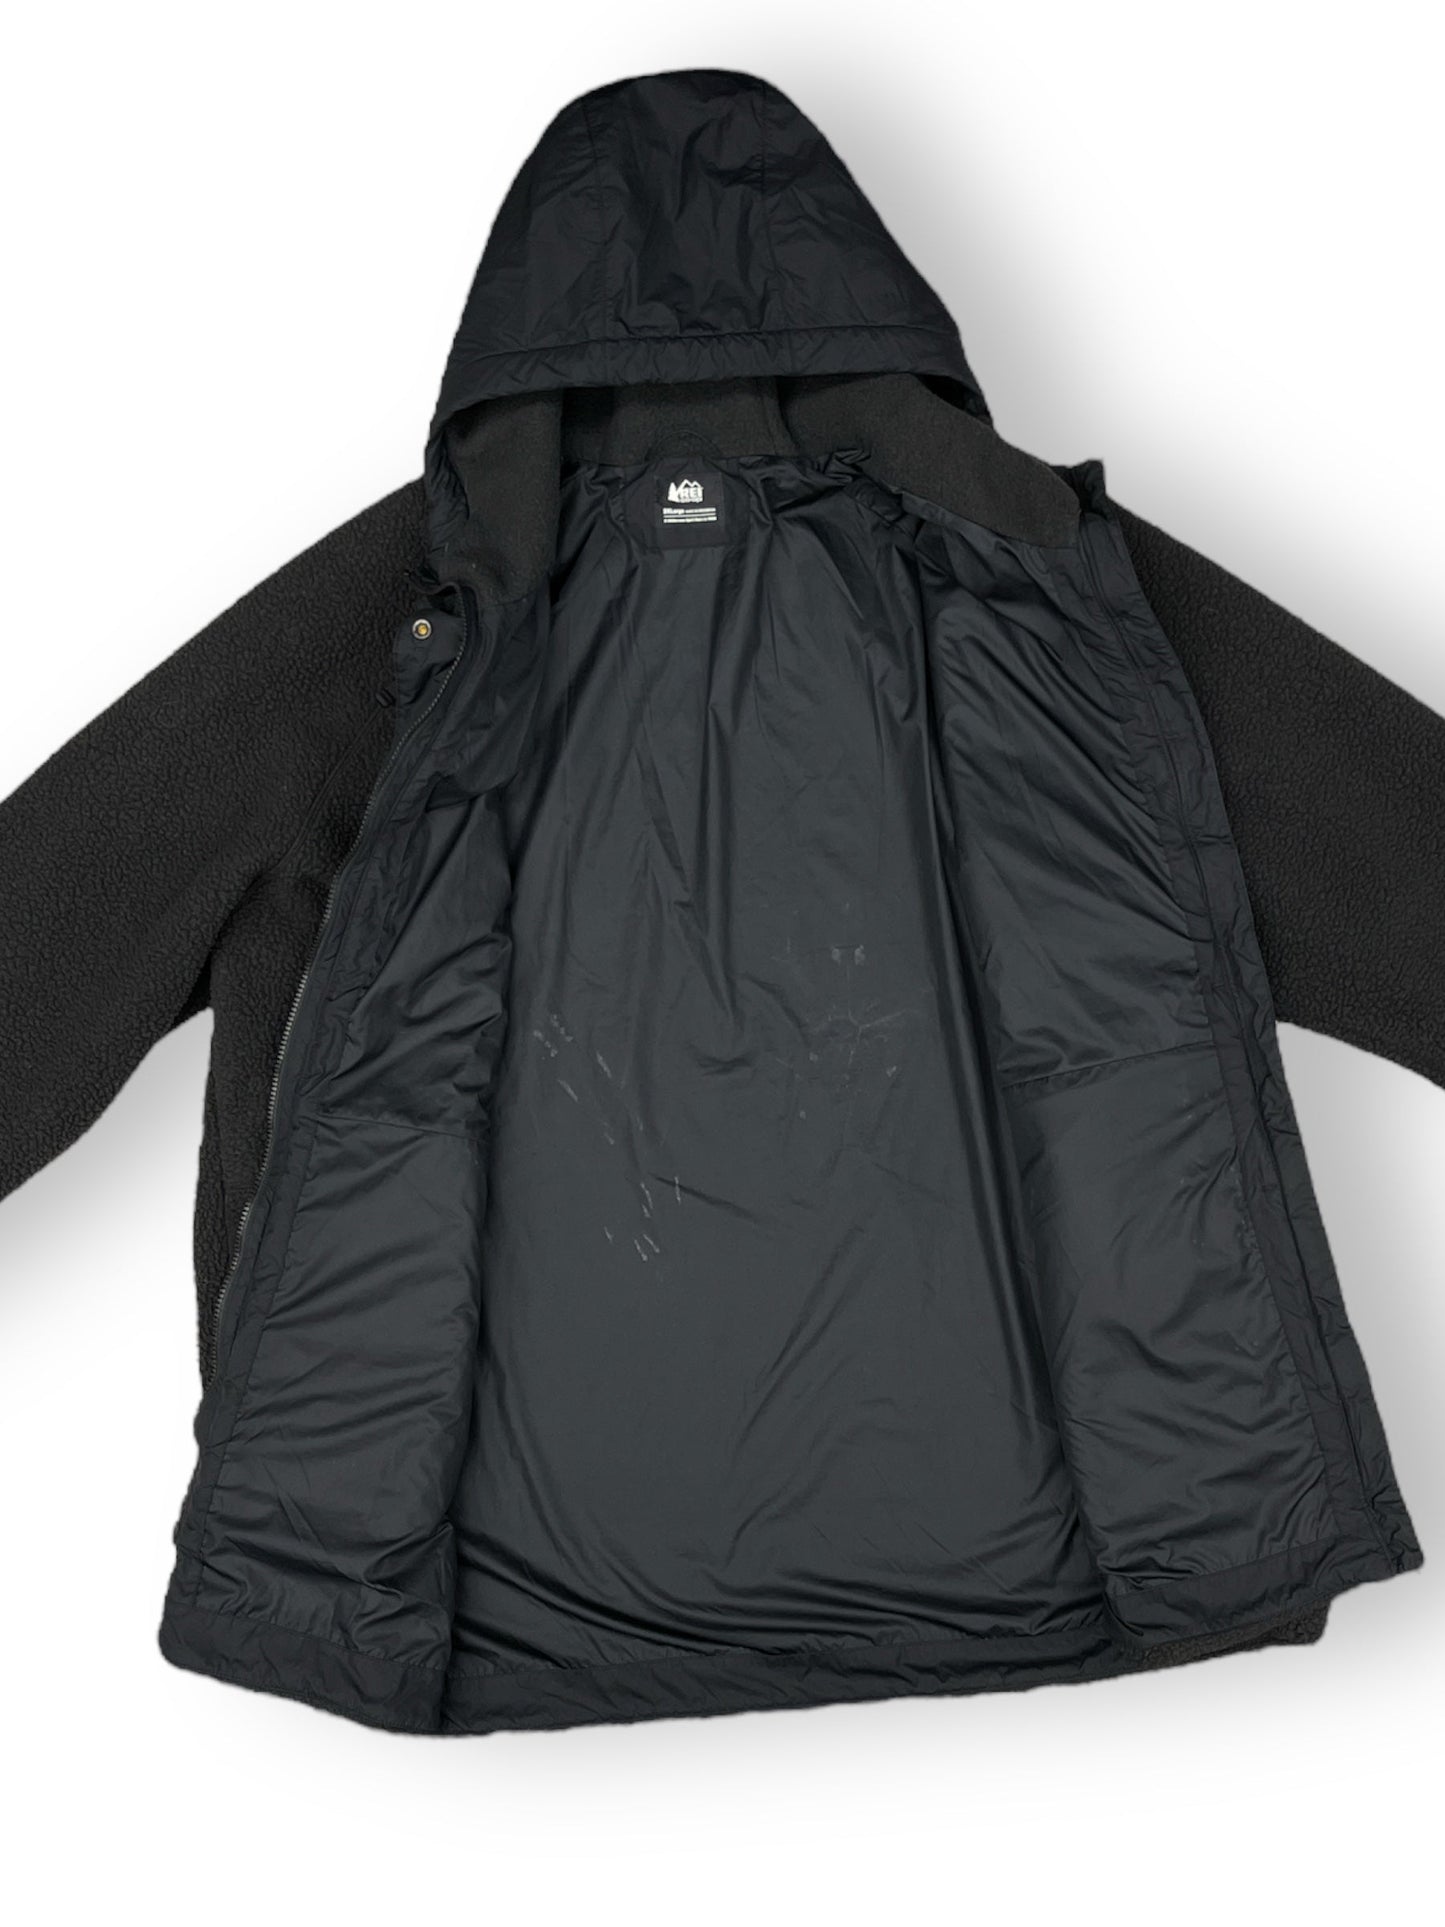 Jacket Faux Fur & Sherpa By Rei  Size: 3x